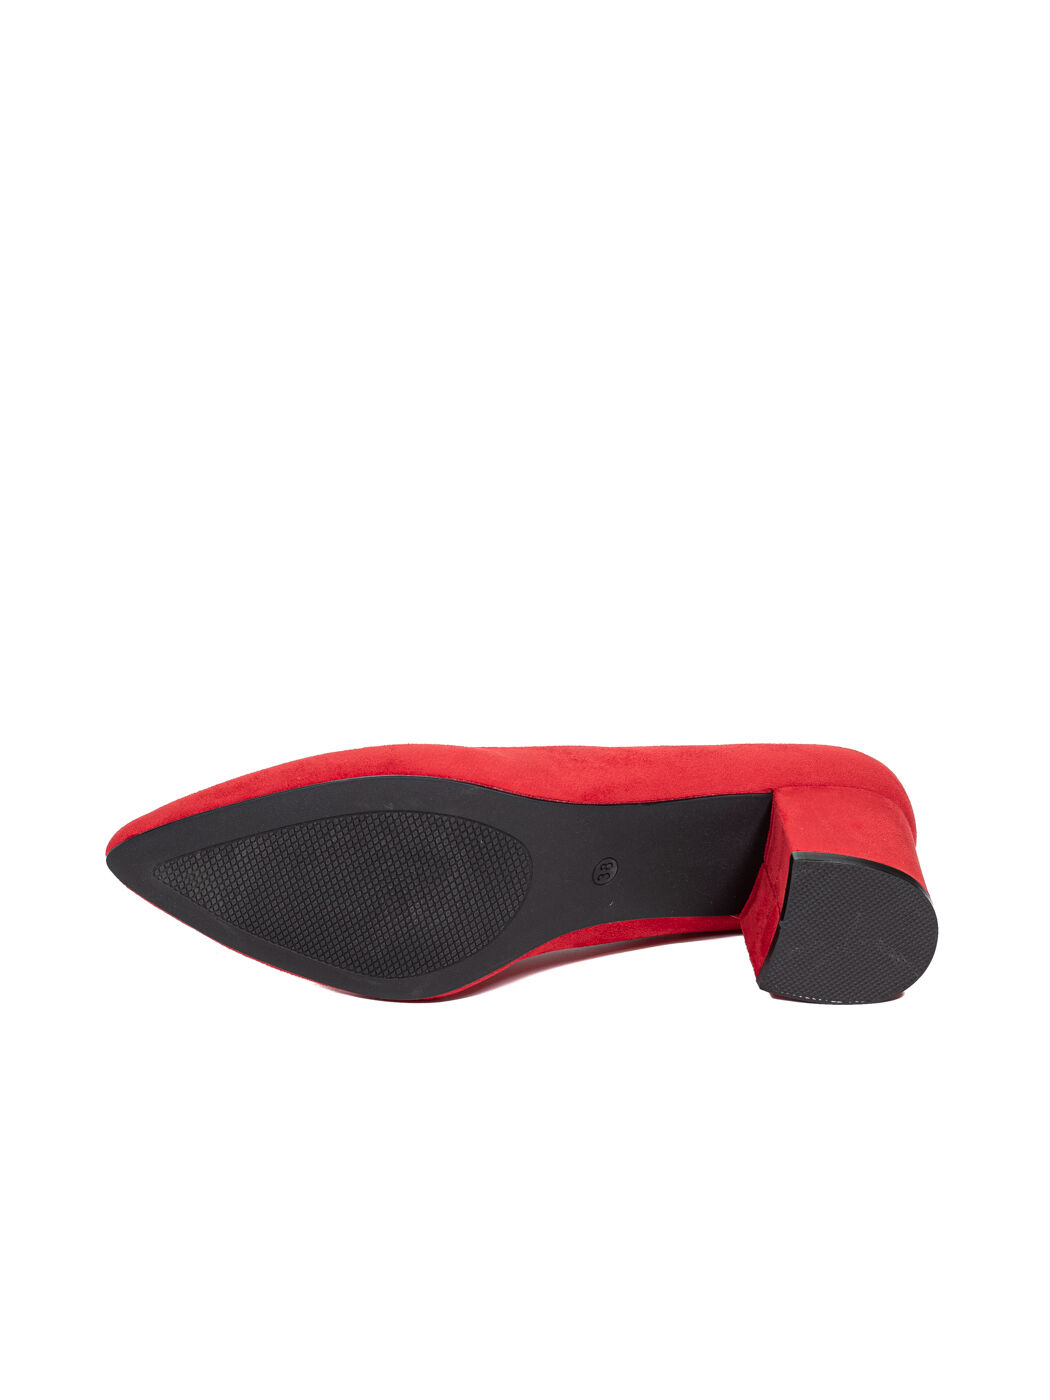 Туфли женские красные экозамша каблук устойчивый демисезон от производителя BM вид 2